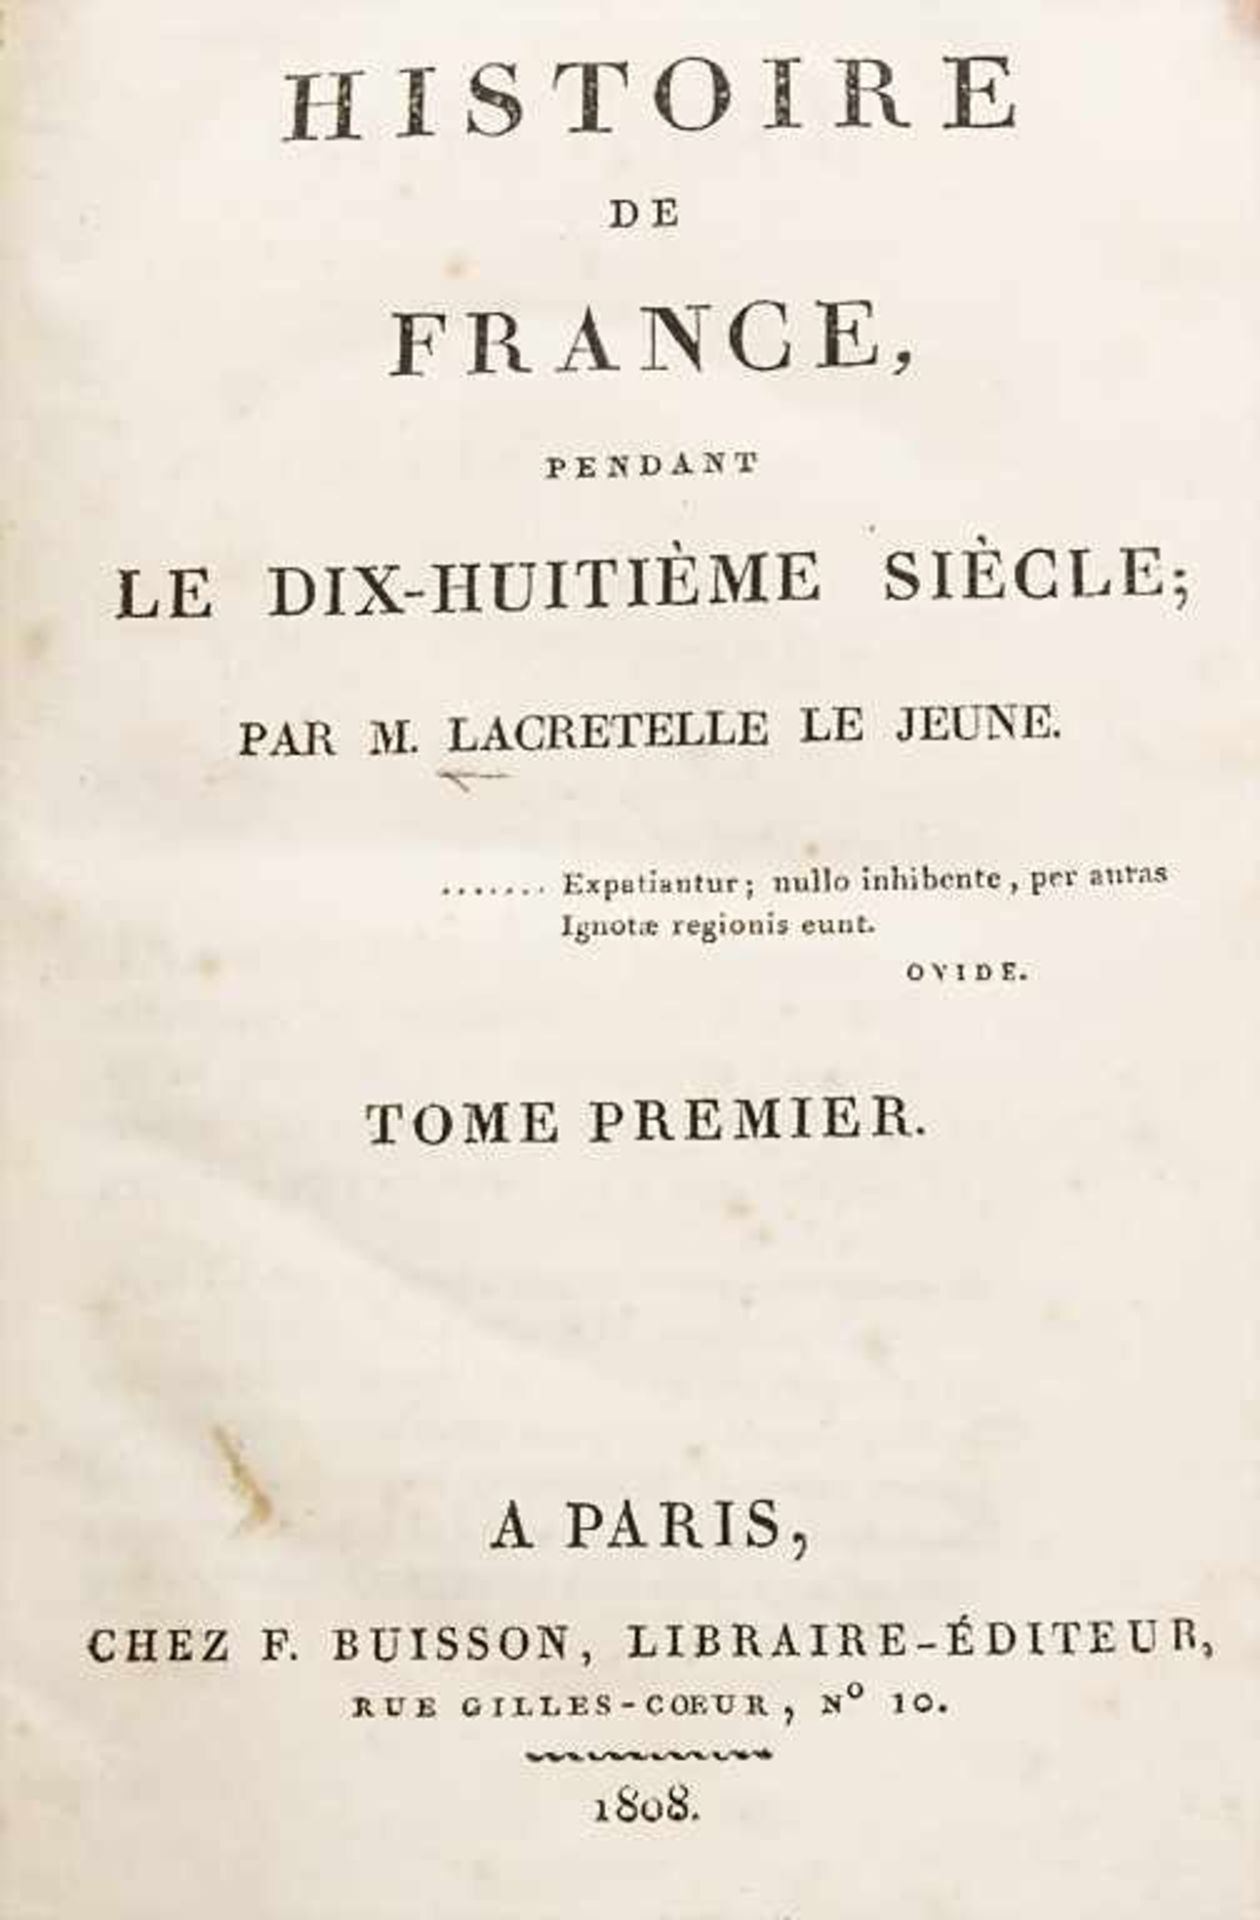 M. Lacretelle le Jeune: Le Dix-Huitième Siècle, Bd. 1 - 6